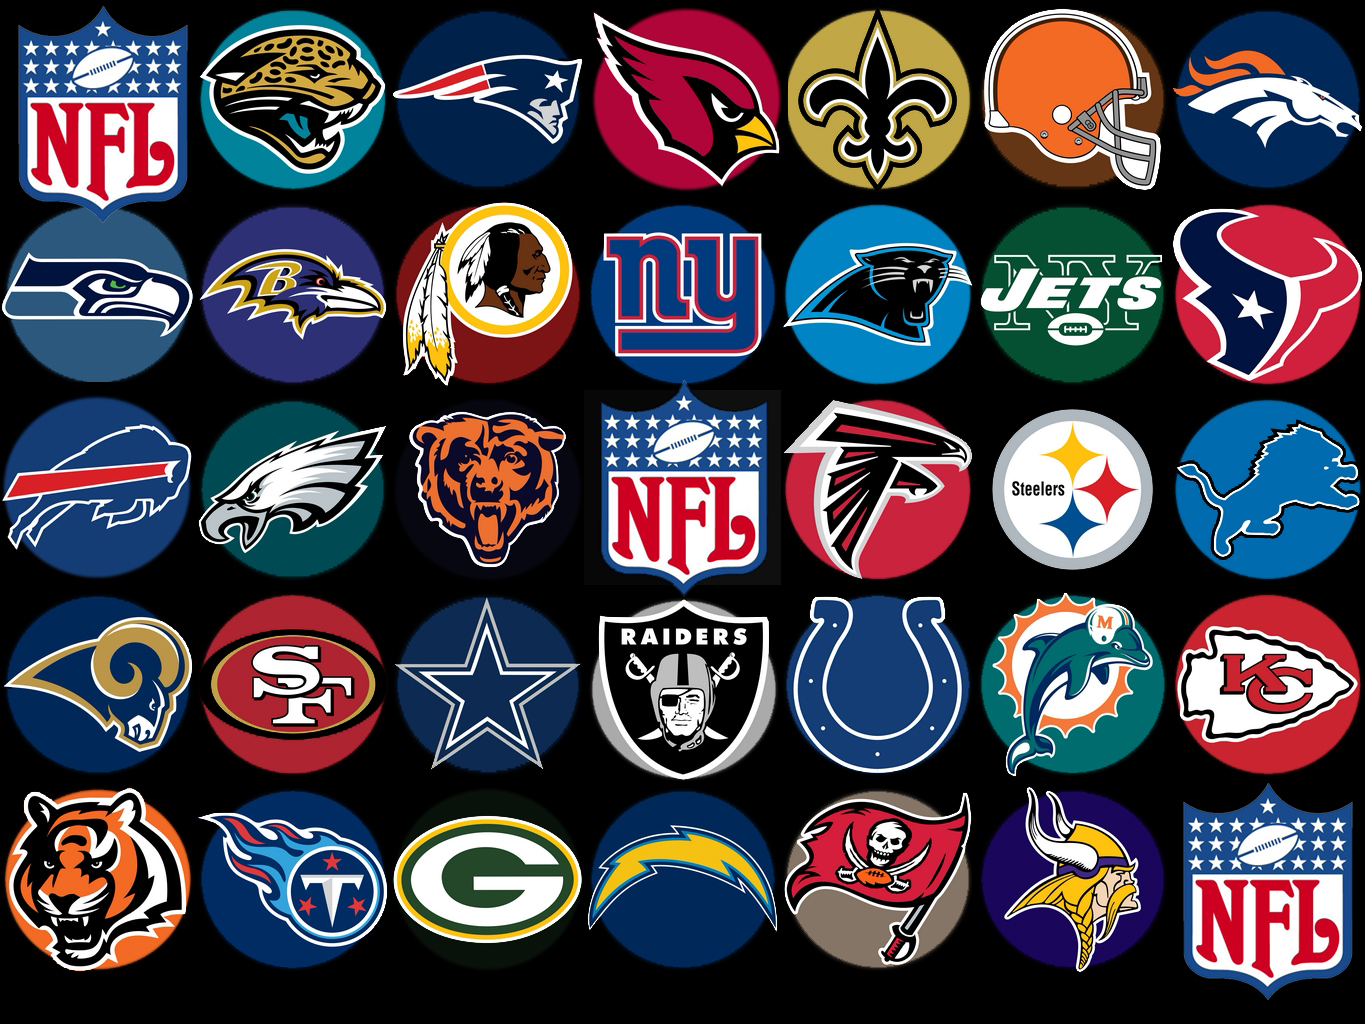 NFL_Background_Spotlight_Logos.jpg